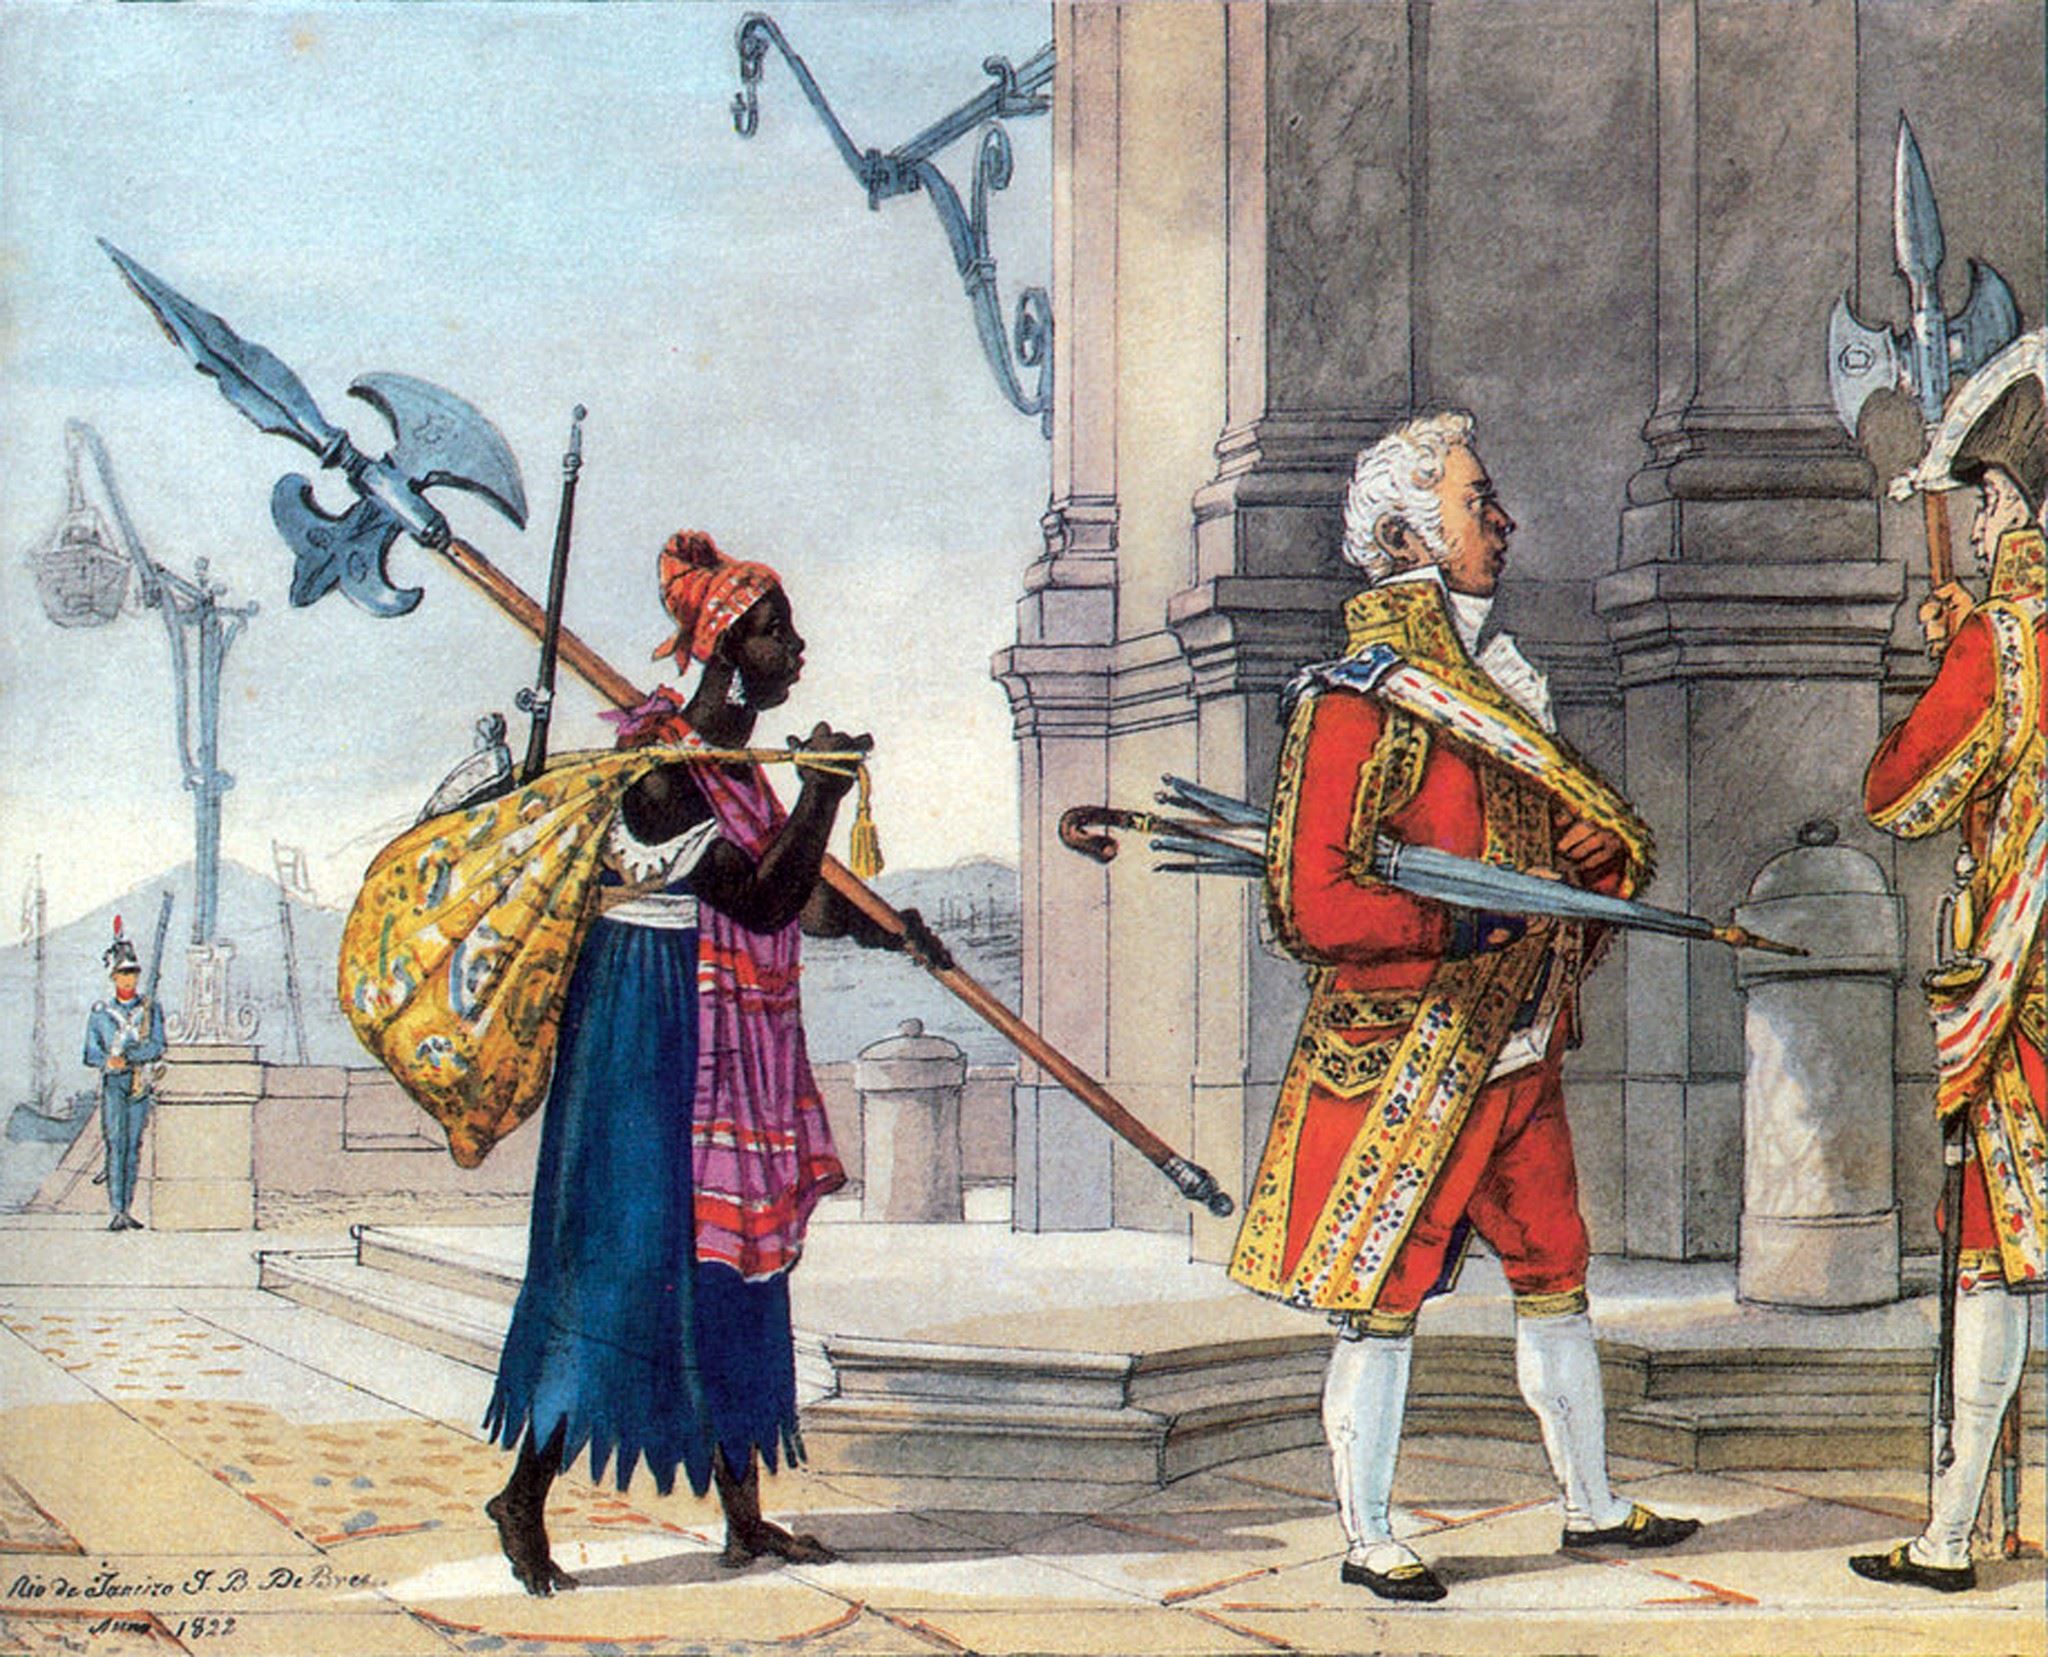 Офицер придворной стражи императора Бразилии идёт на службу, 1822 г. Автор Жан-Батист Дебре.